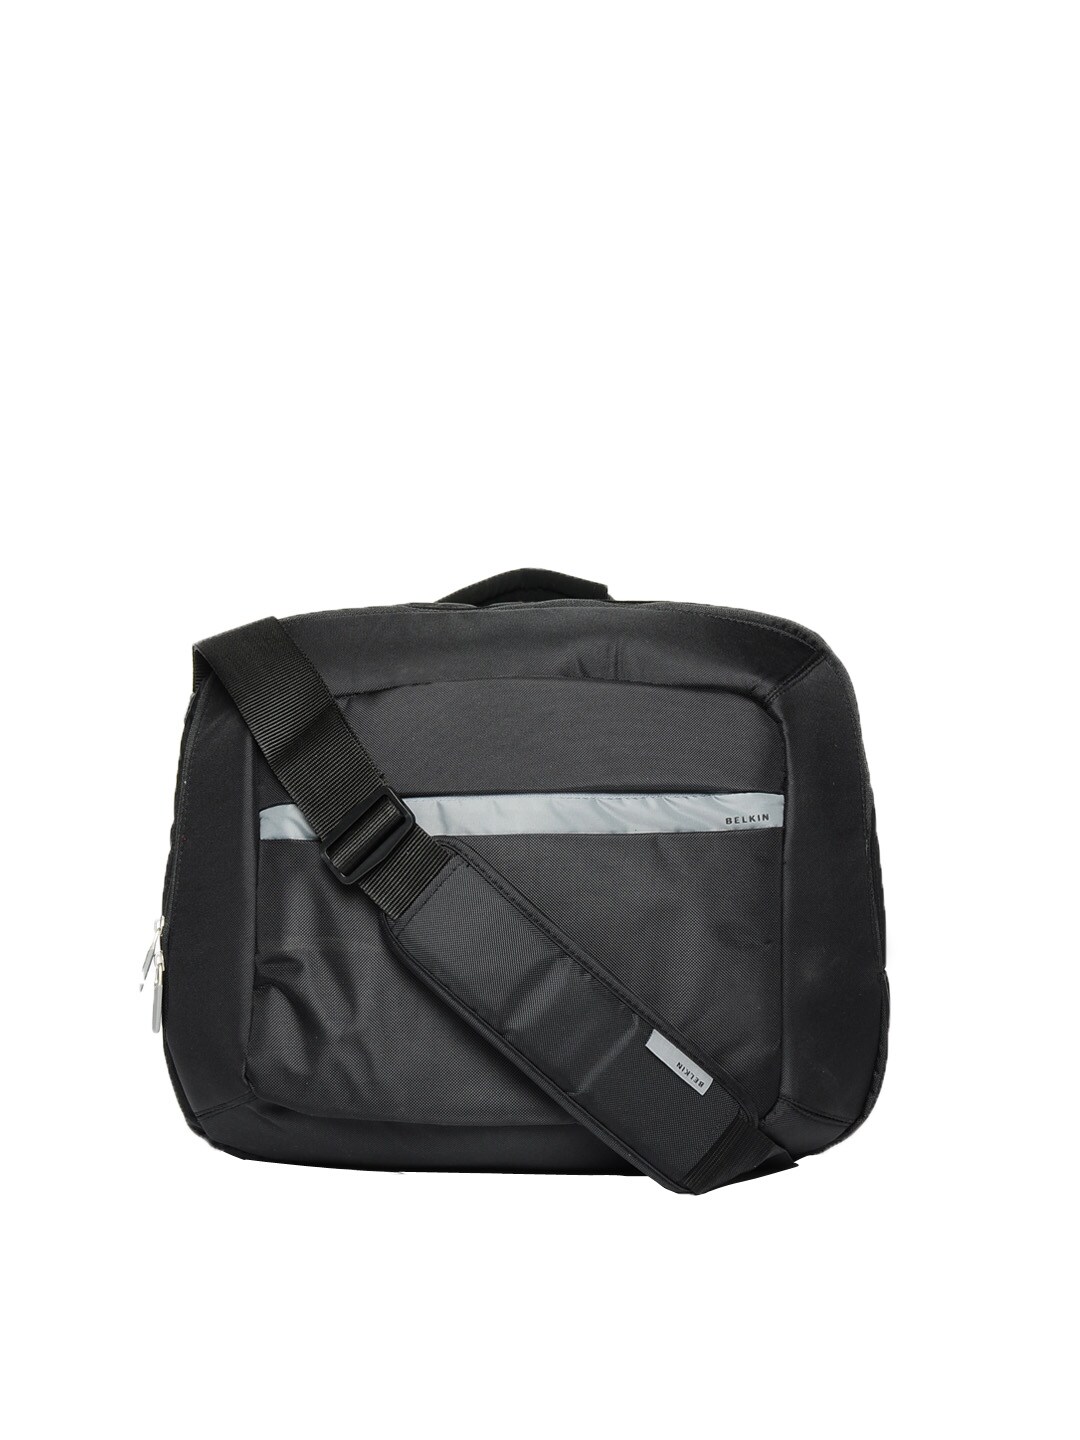 Belkin Unisex Black Messenger Bag